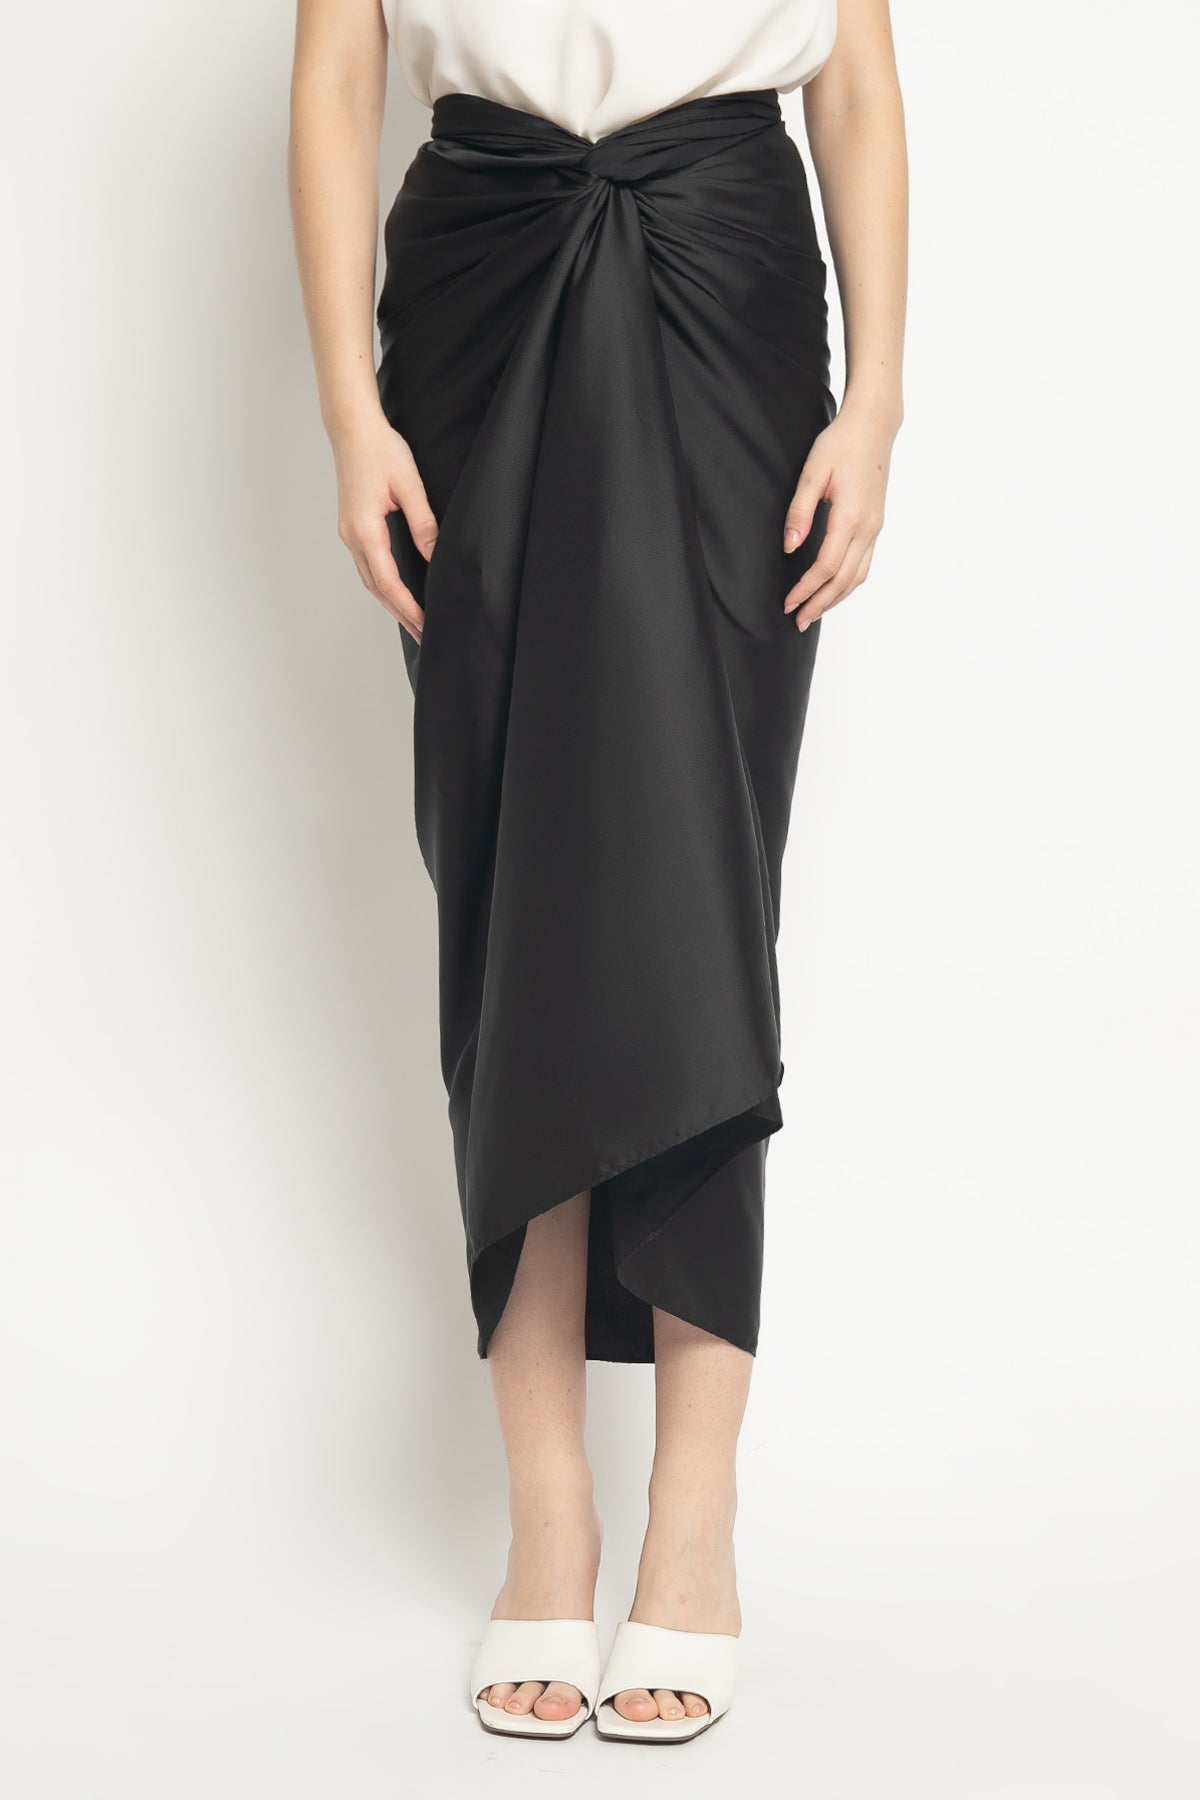 Aisyah Skirt in Black